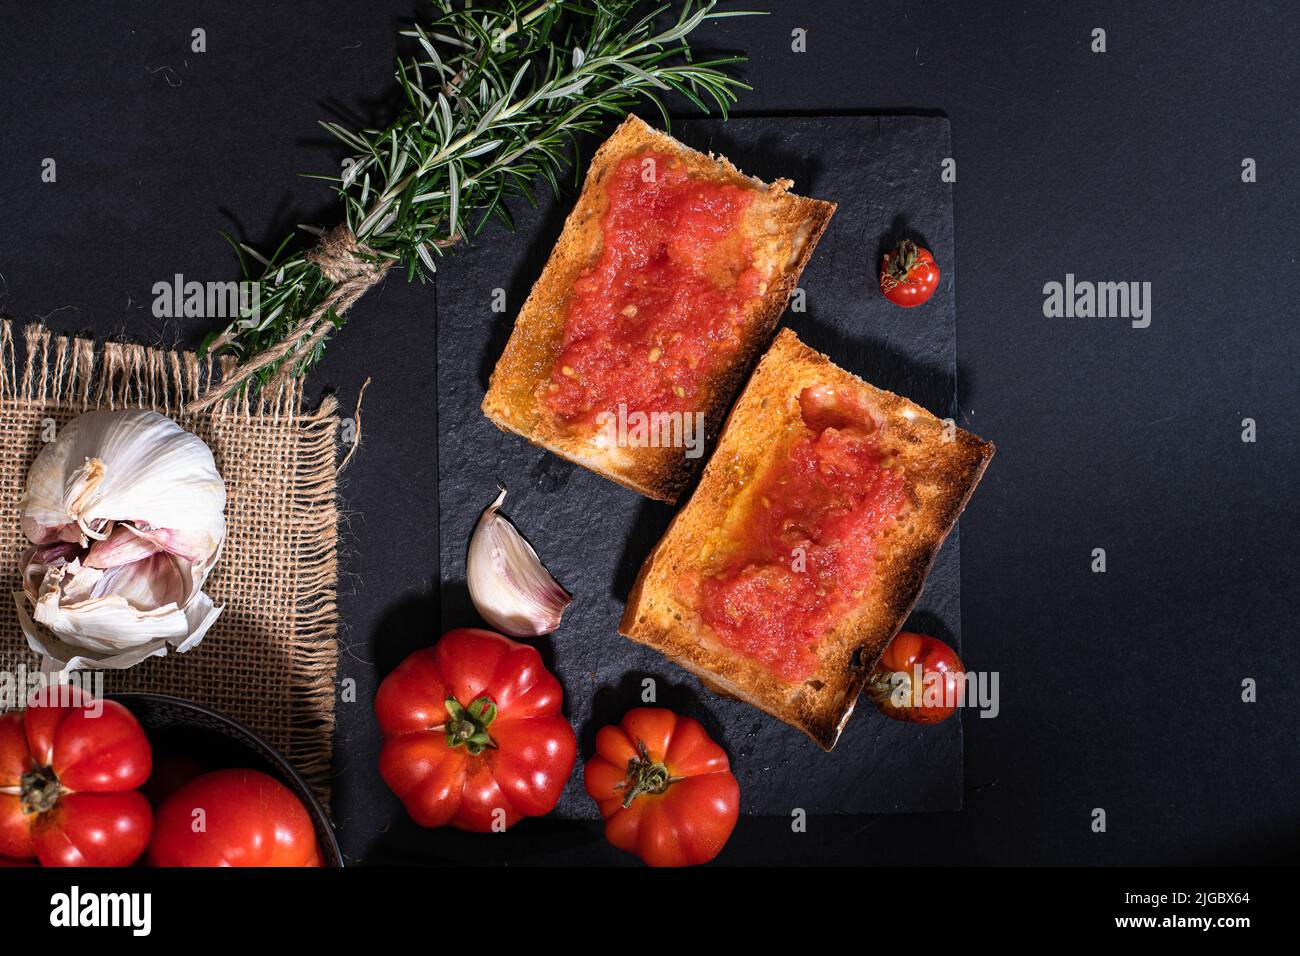 Antipasto tradizionale spagnolo - 'Pan Tomaca' (pane con pomodoro) pane tostato con aglio condito con pomodoro appena spremuto e olio d'oliva vergine. Foto Stock